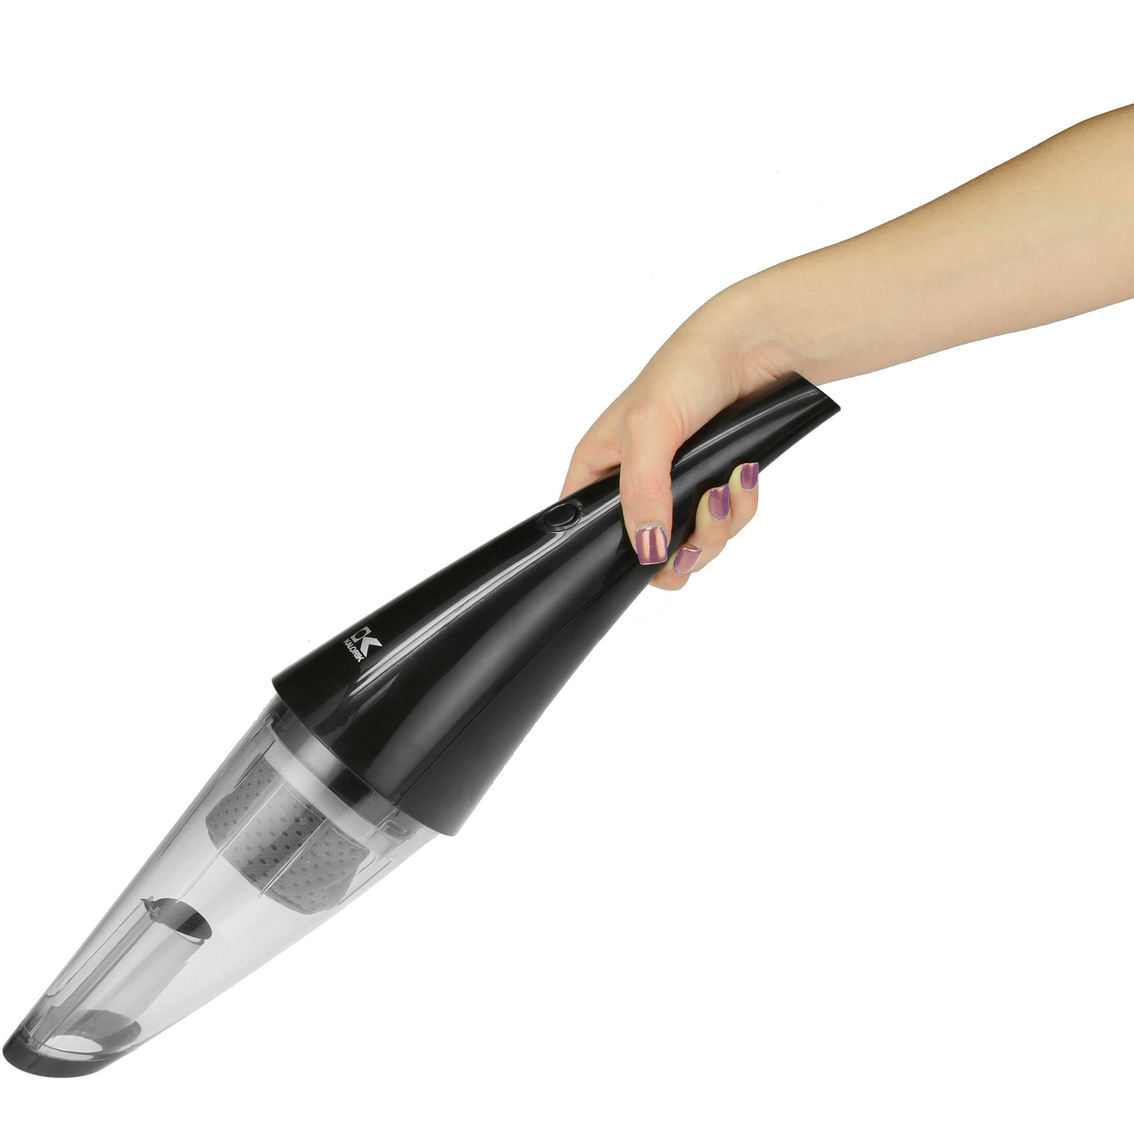 Kalorik Artisan Hand Vacuum - Image 2 of 2